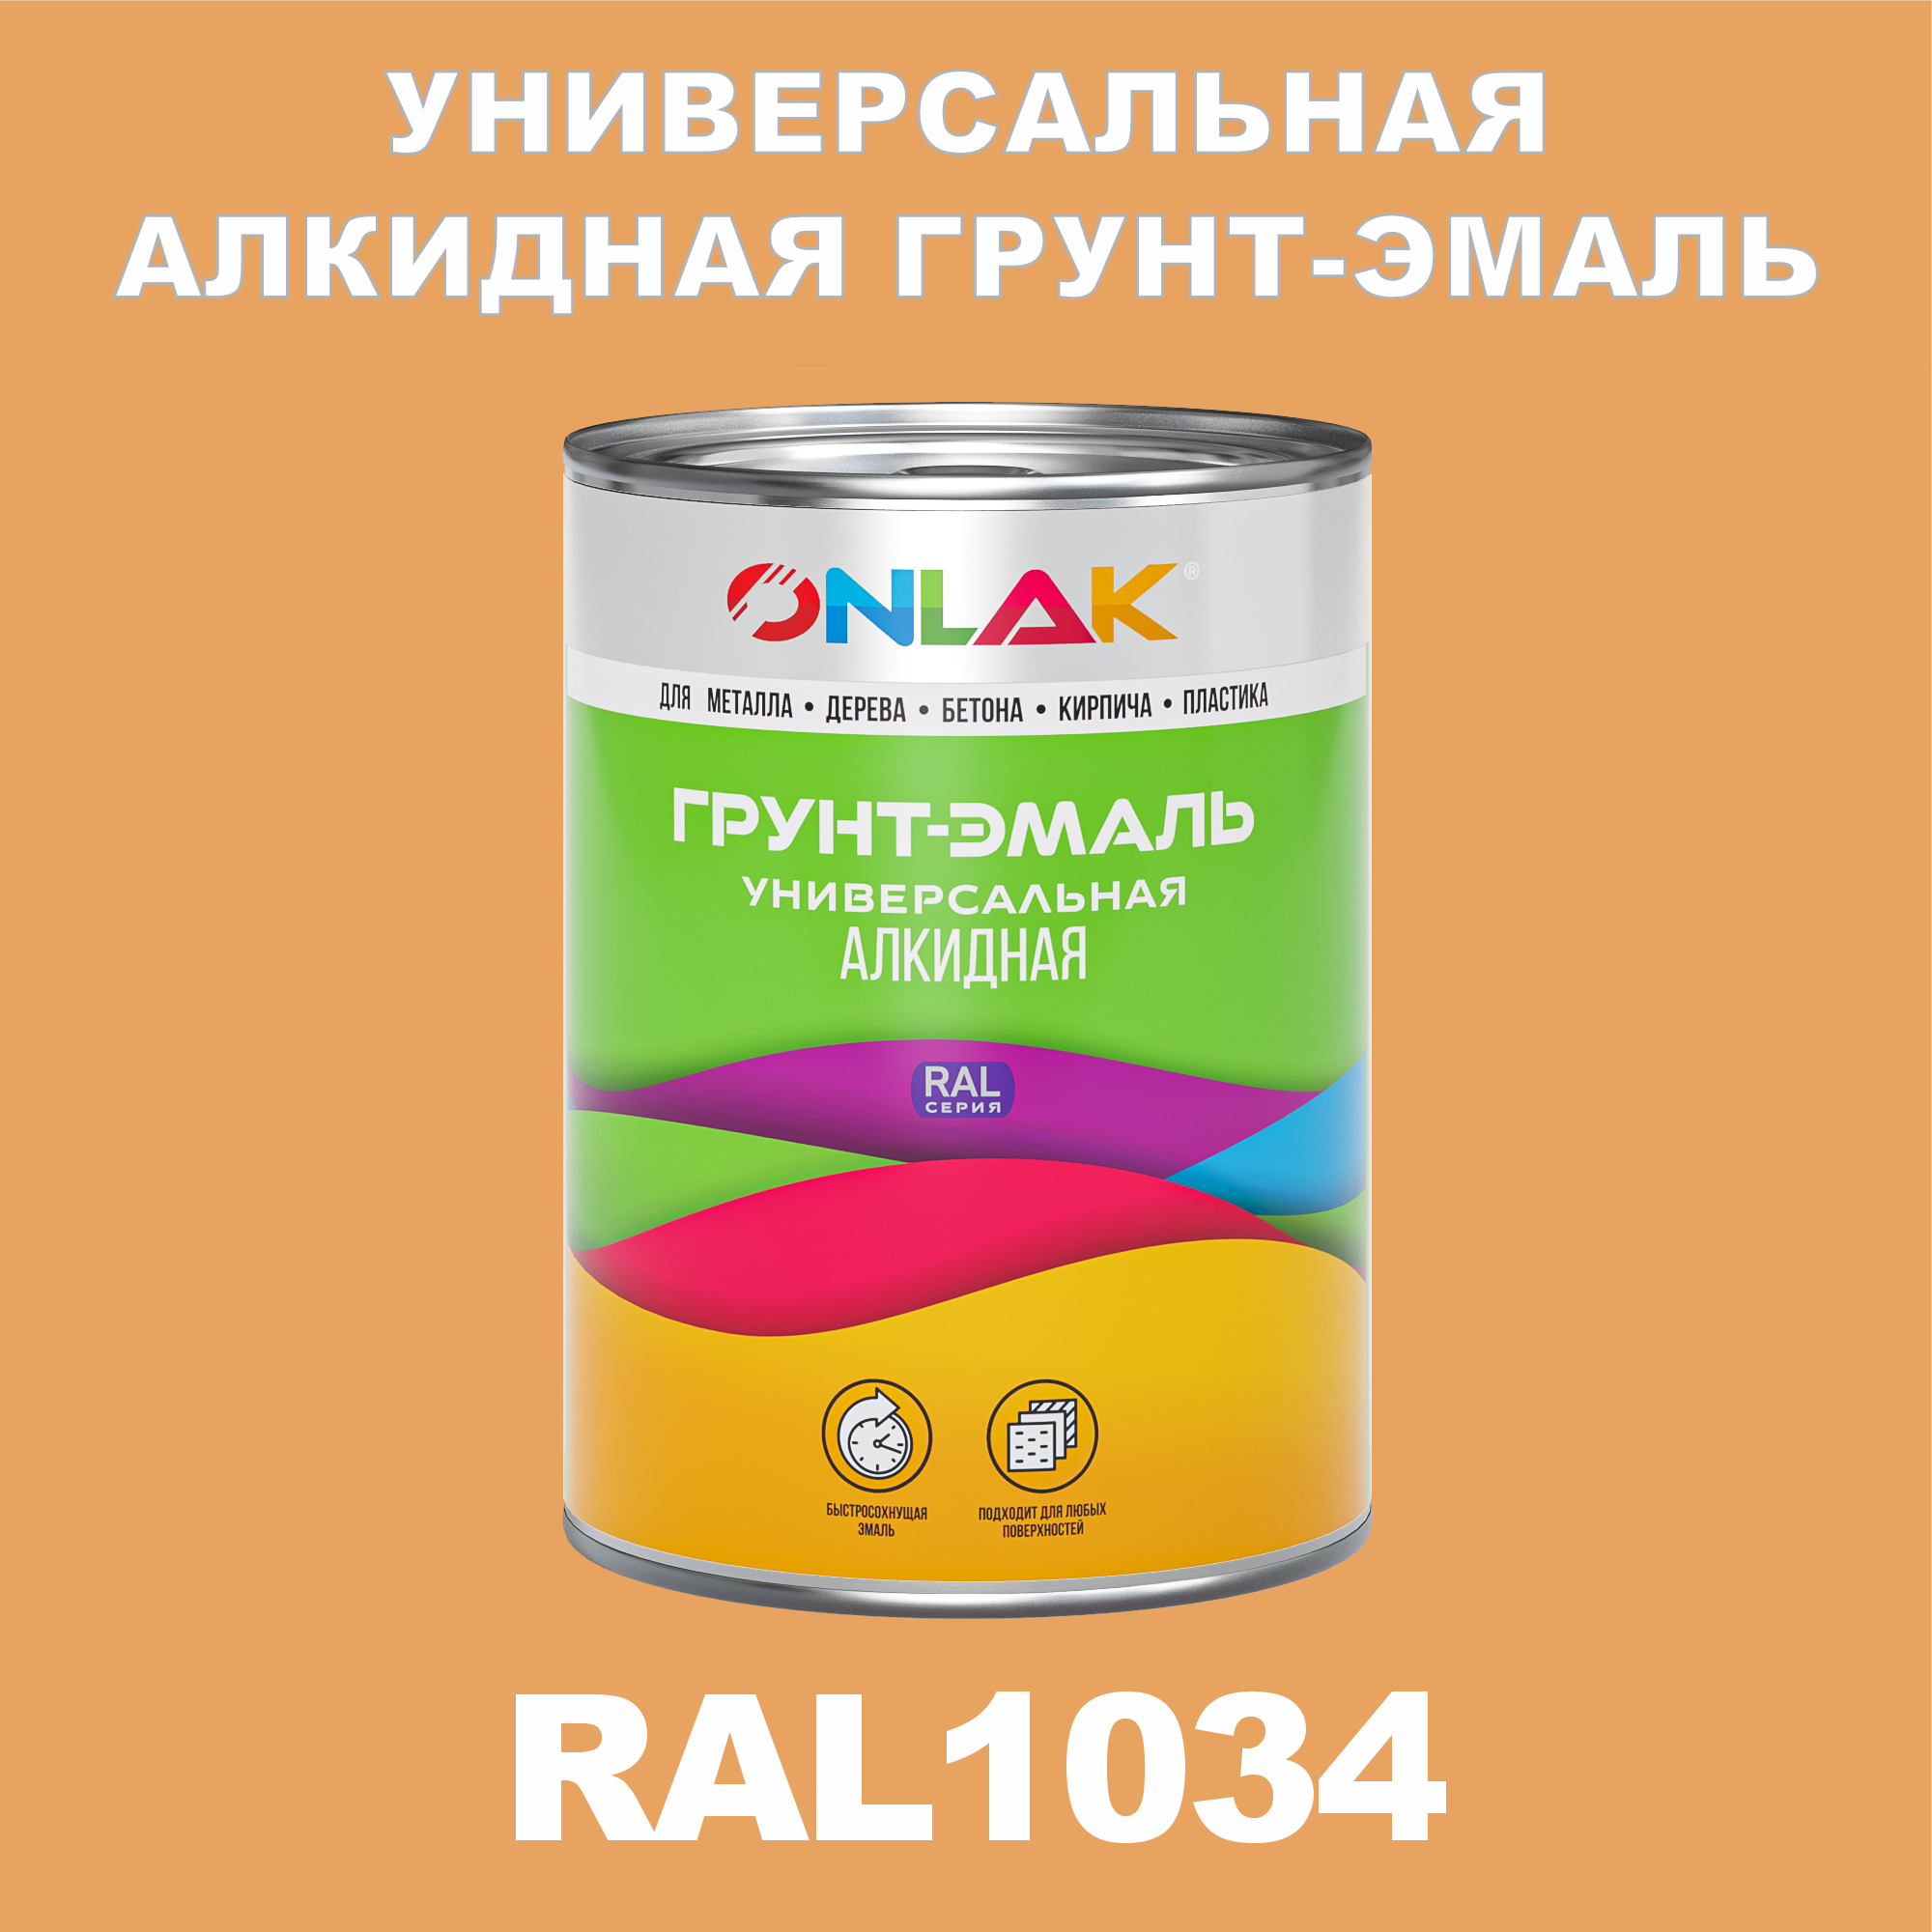 Грунт-эмаль ONLAK 1К RAL1034 антикоррозионная алкидная по металлу по ржавчине 1 кг